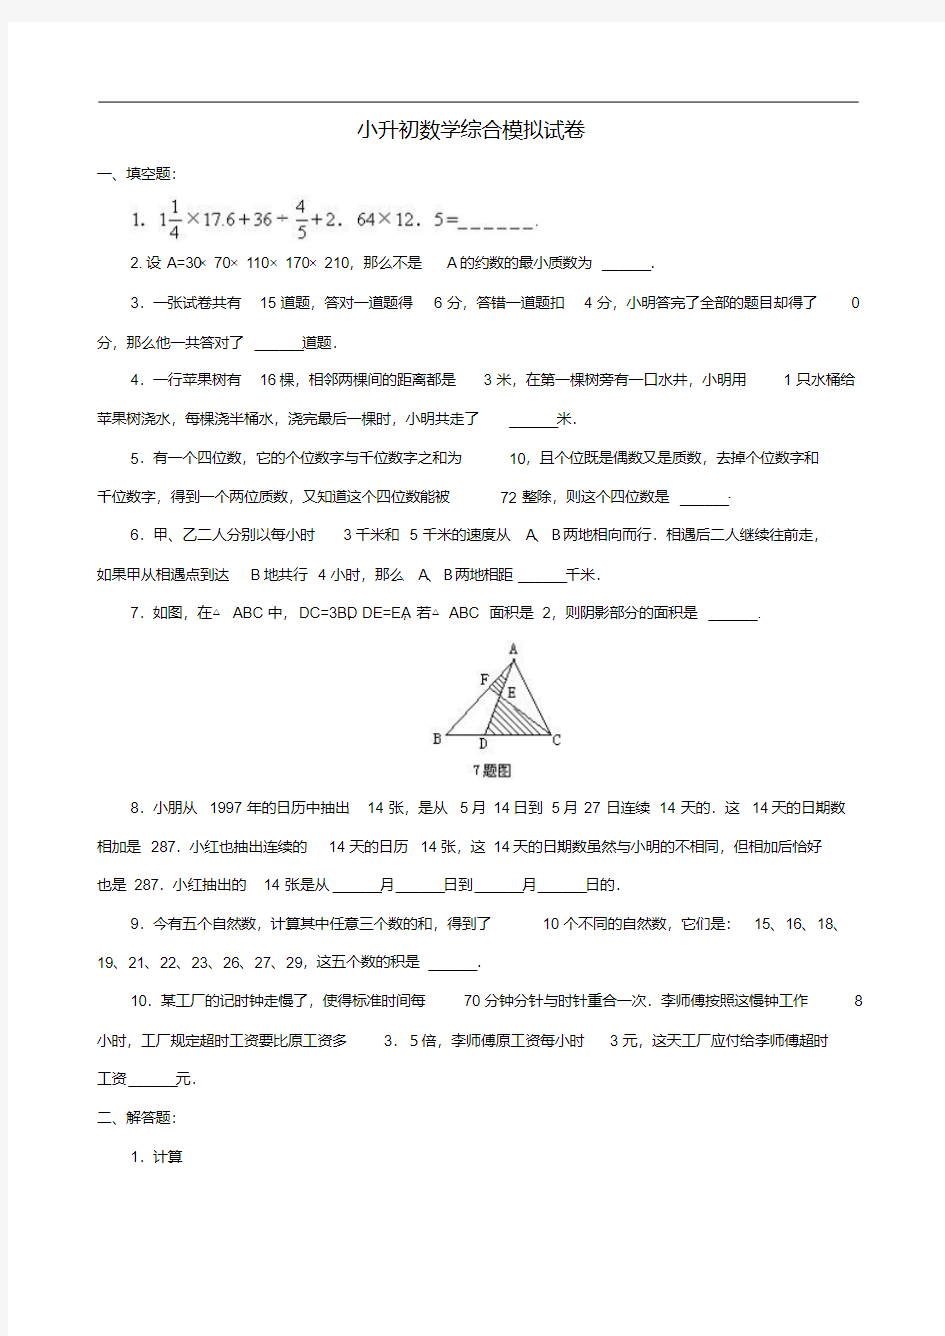 名校小升初数学真题合集(66).pdf